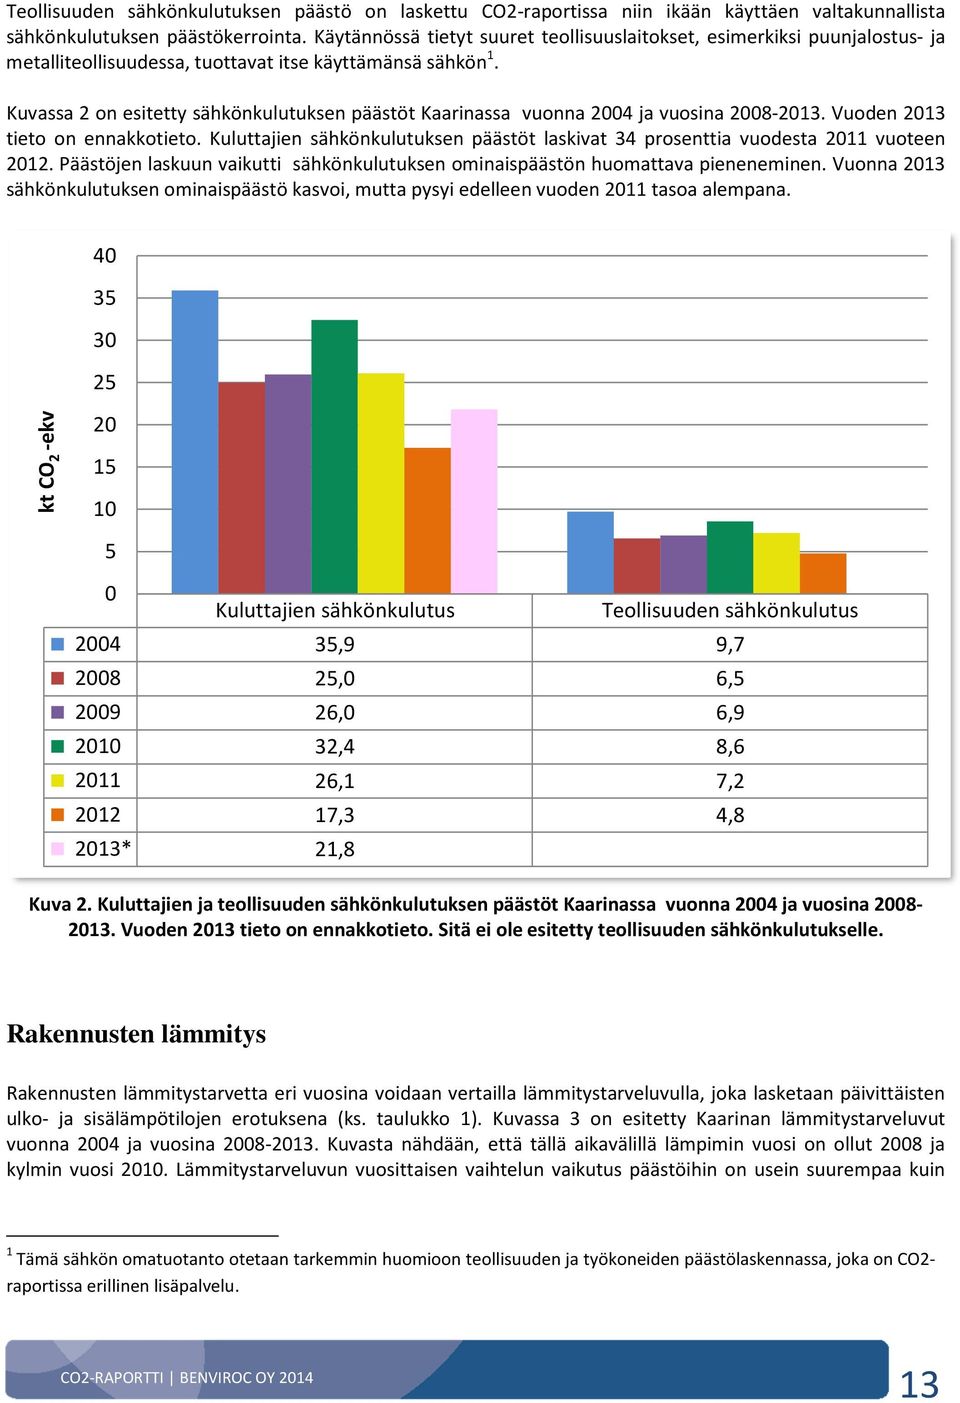 Kuvassa 2 on esitetty sähkönkulutuksen päästöt Kaarinassa vuonna 2004 ja vuosina 2008-2013. Vuoden 2013 tieto on ennakkotieto.